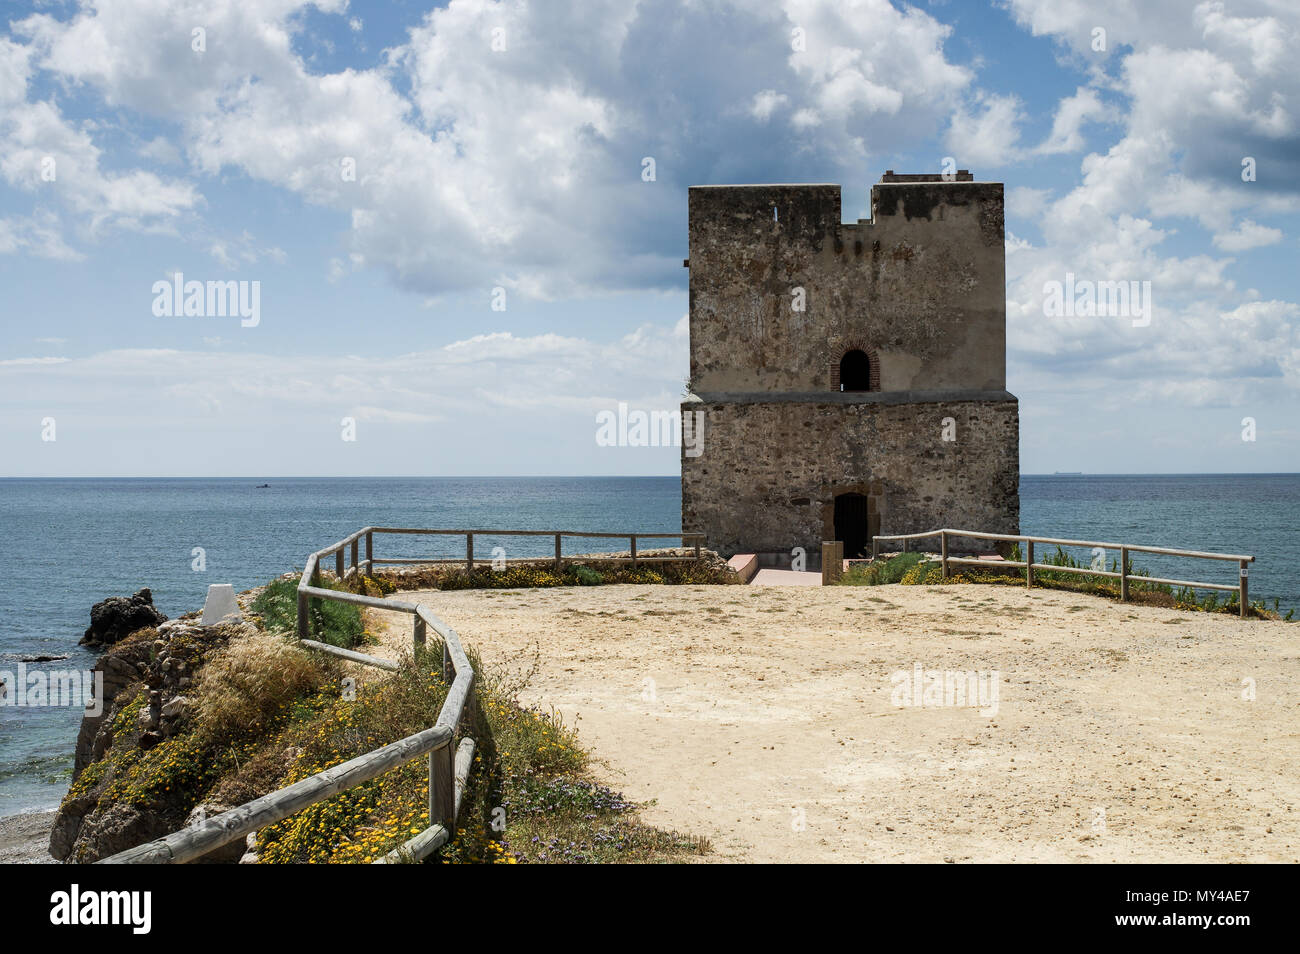 Torre de la Sal, locally known as 'Torre del Salto de la Mora' (Tower of the Moor's leap) - Casares, Spain Stock Photo